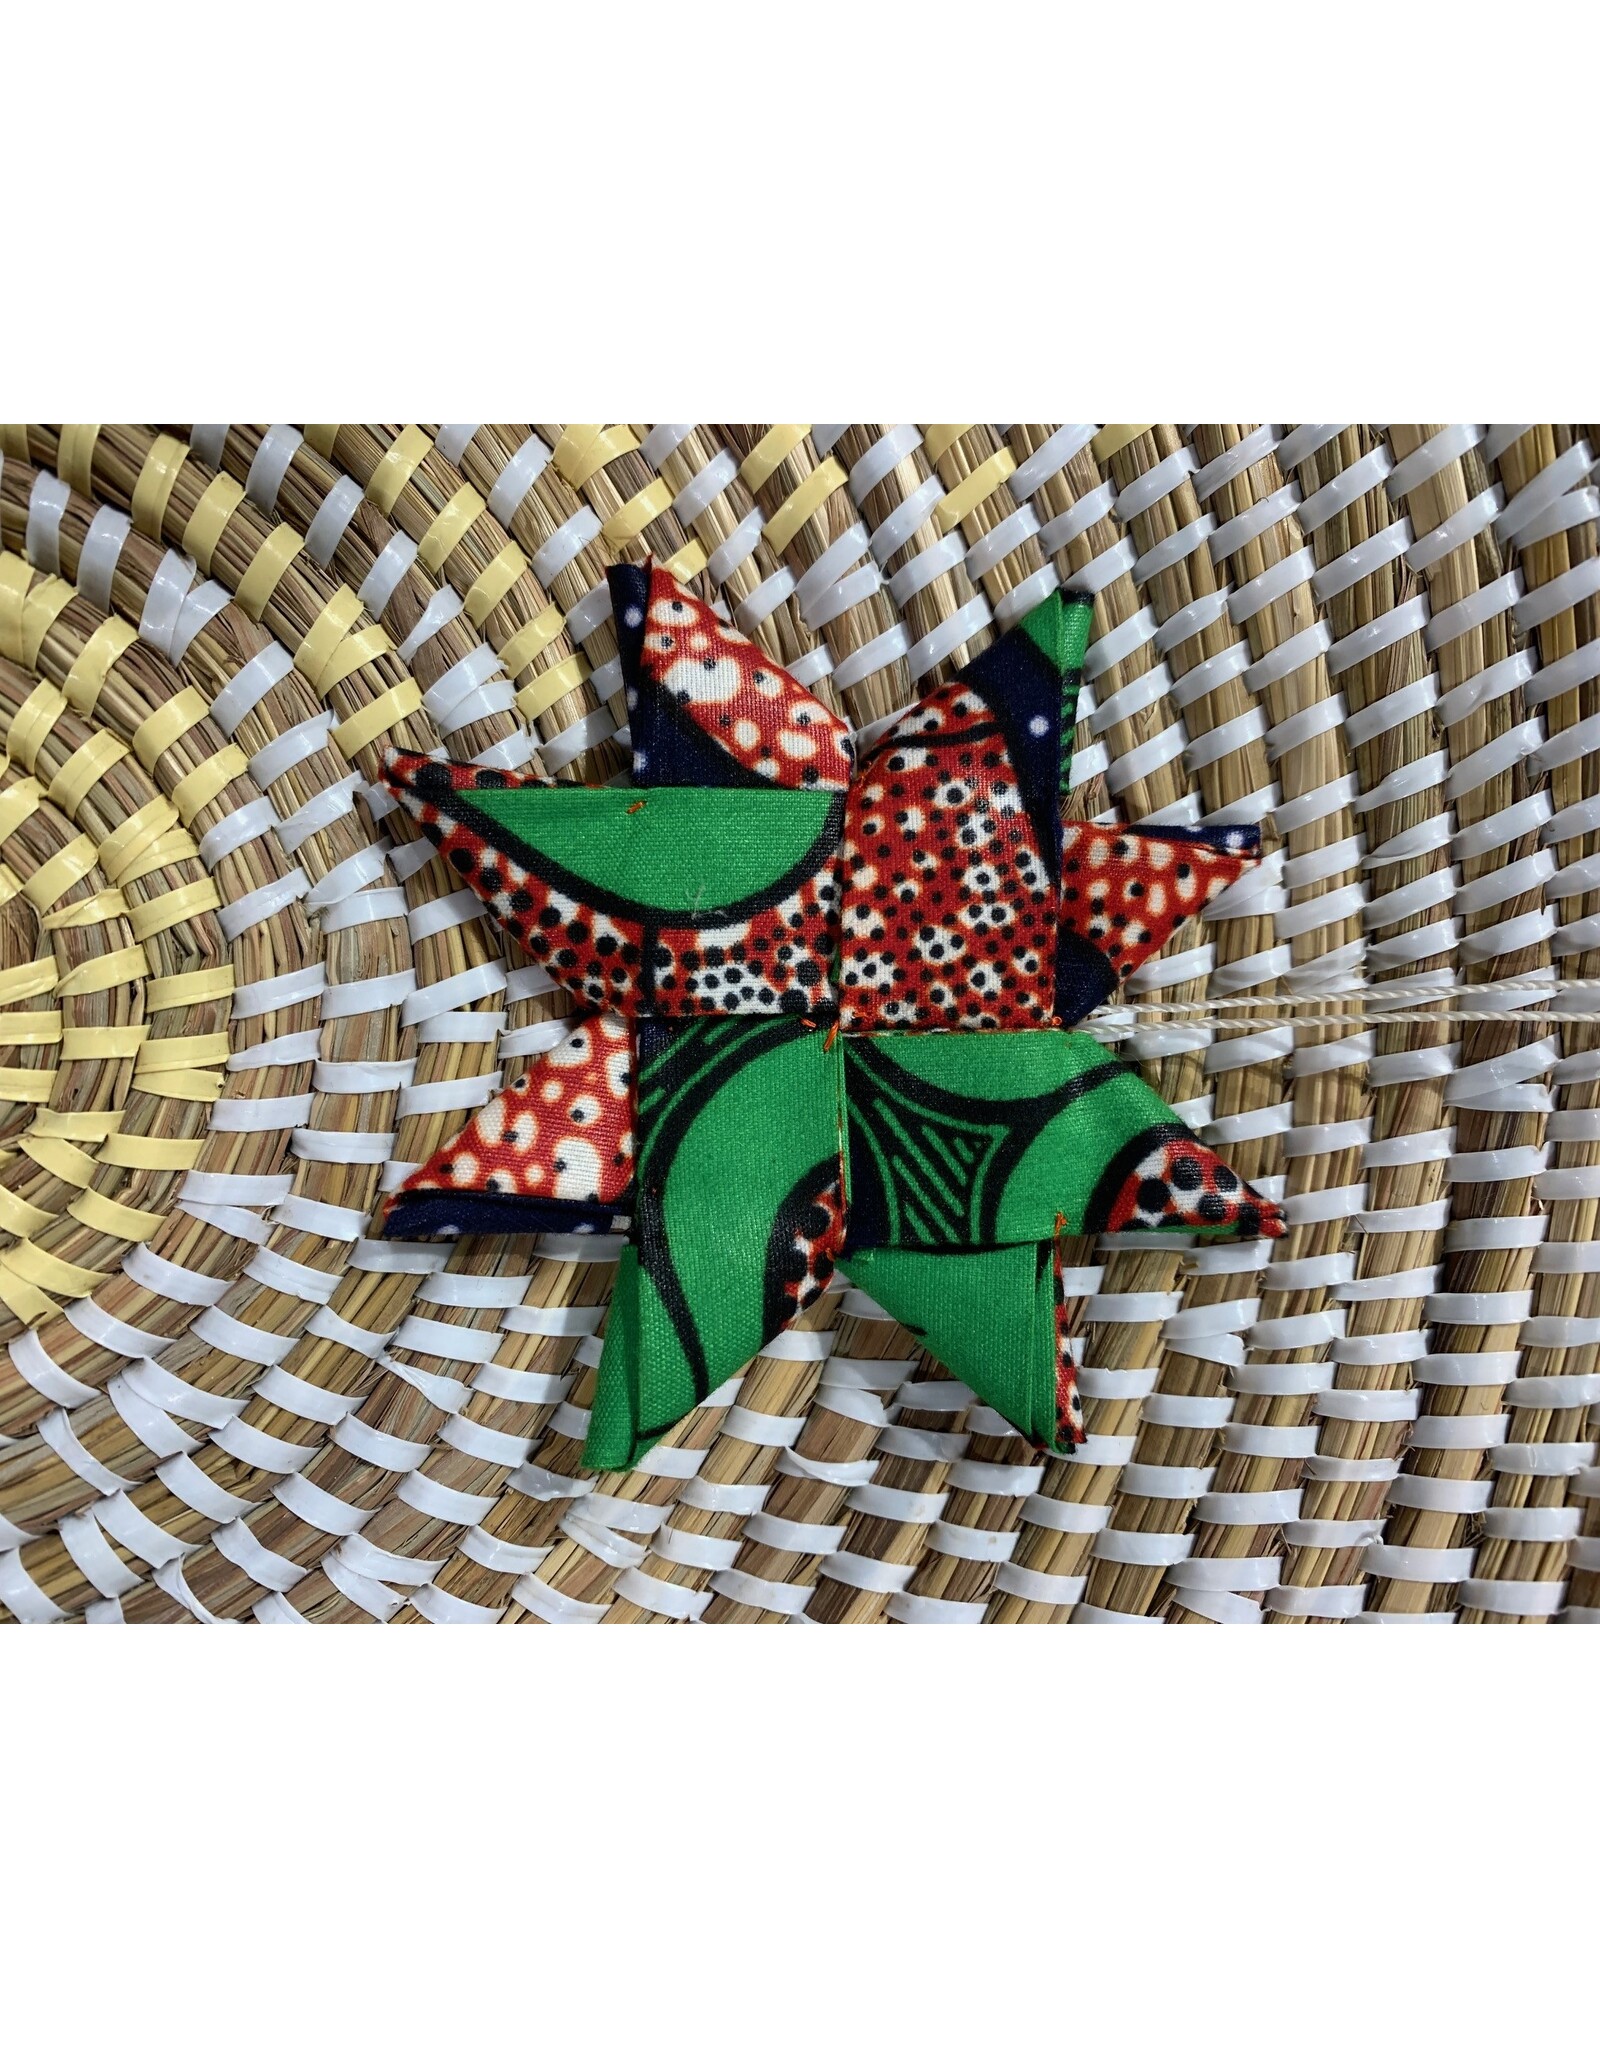 Rwanda CLEARANCE Fabric Star Ornament - Red & Green, Rwanda